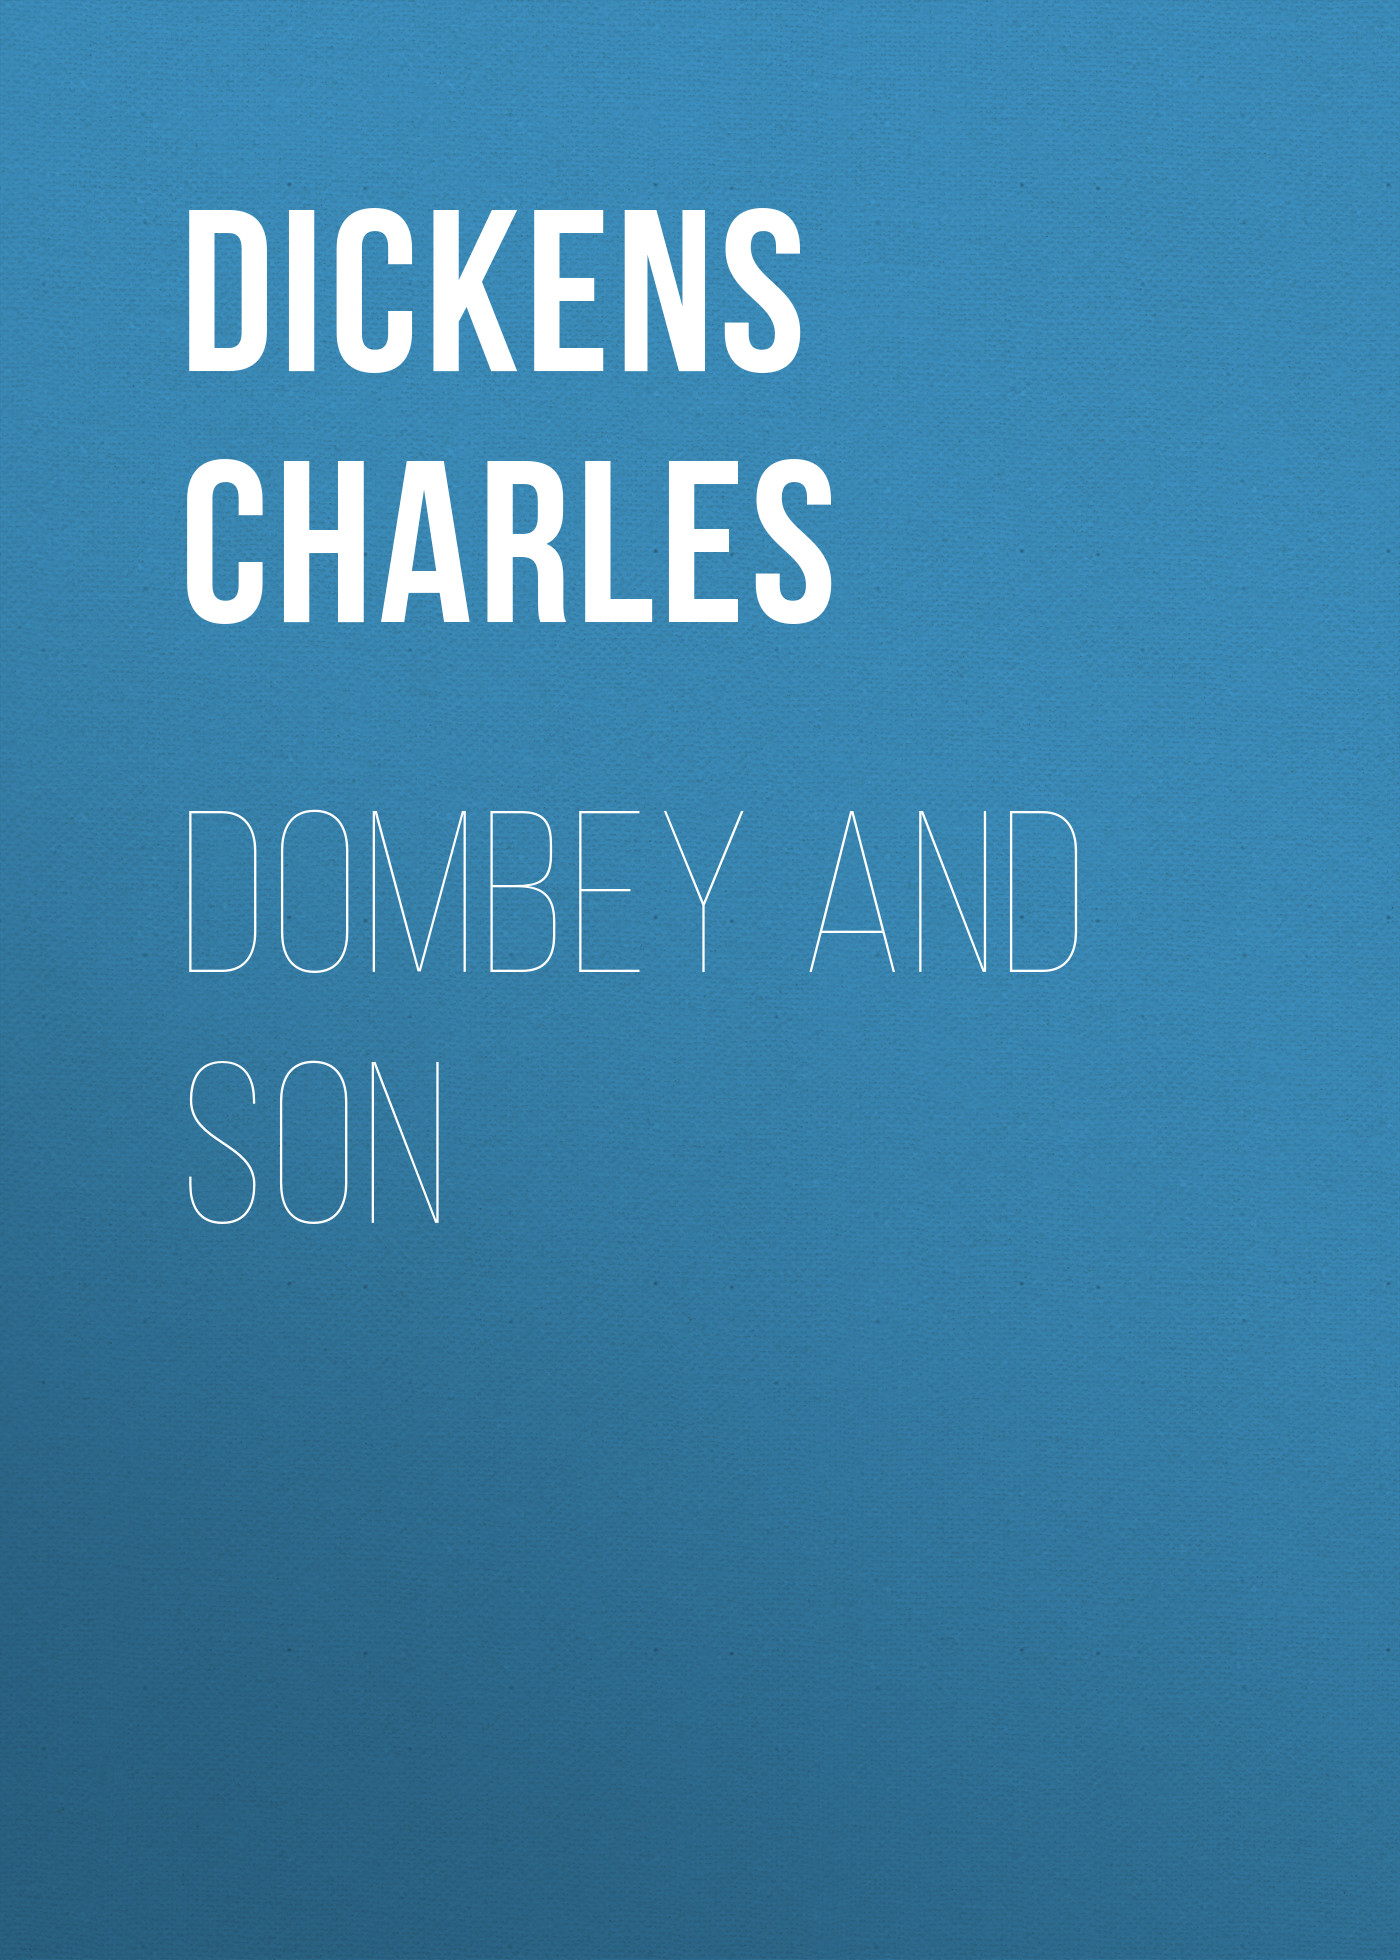 Книга Dombey and Son из серии , созданная Чарльз Диккенс, может относится к жанру Зарубежная старинная литература, Зарубежная классика. Стоимость электронной книги Dombey and Son с идентификатором 25092396 составляет 0 руб.